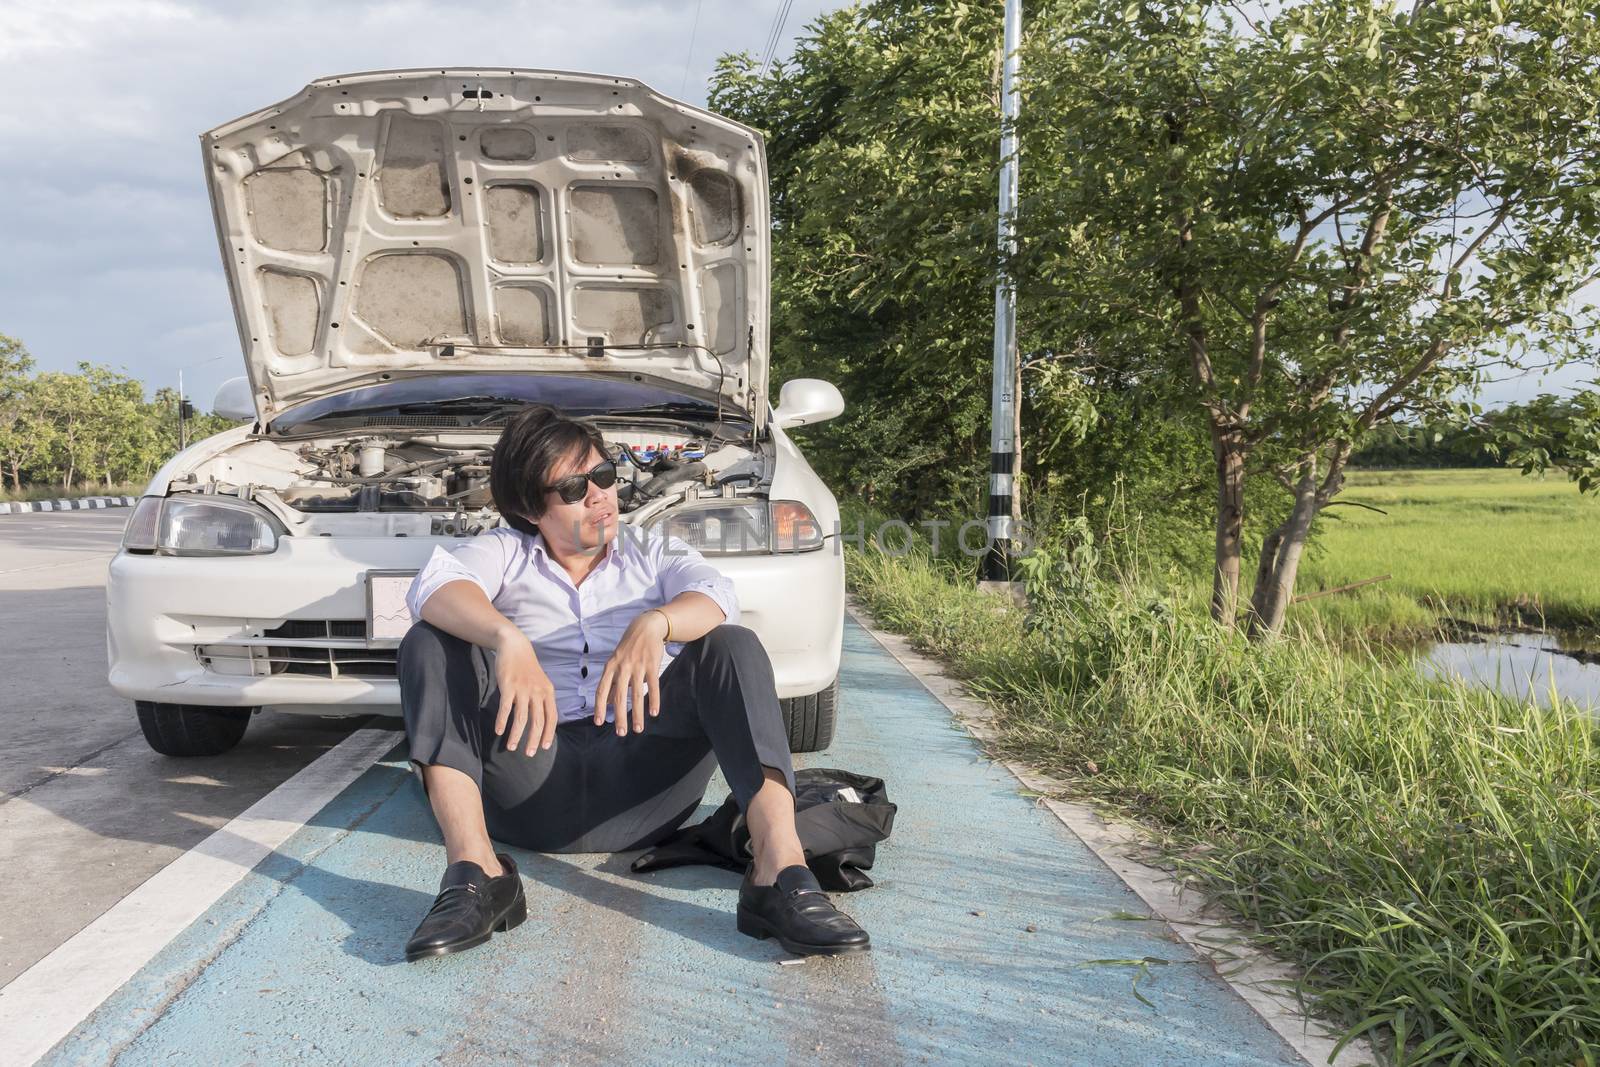 Asian business man sitting on a broken car